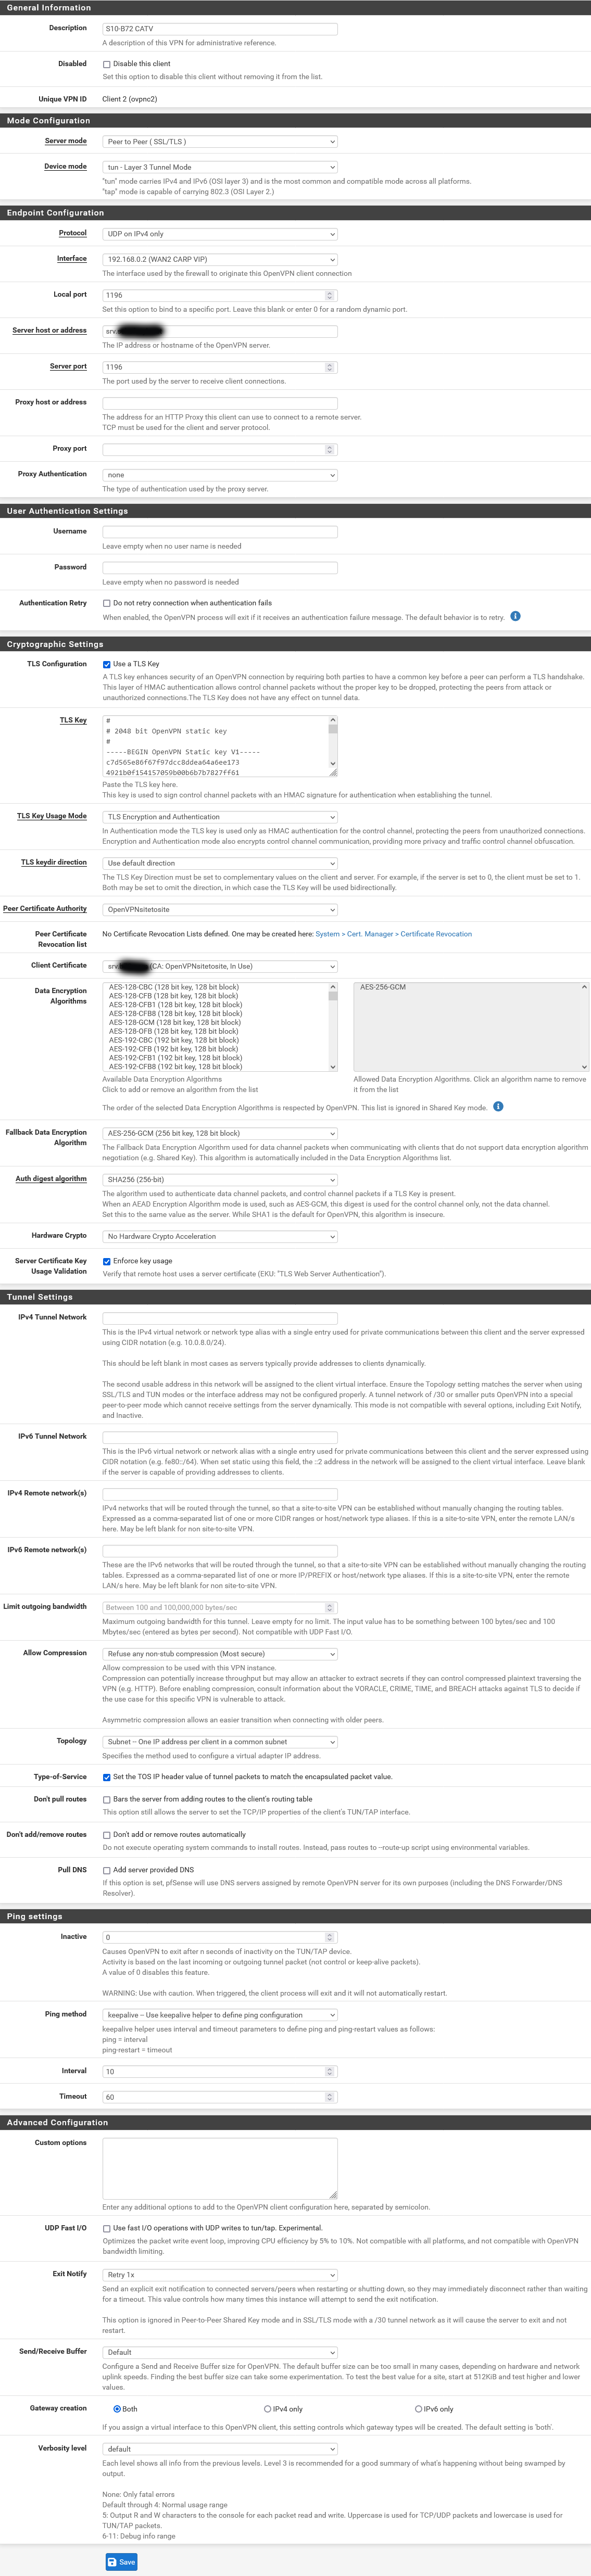 Screenshot 2023-07-06 at 18-12-29 pfsenseb72m.schefczyk.net - VPN OpenVPN Clients Edit.png